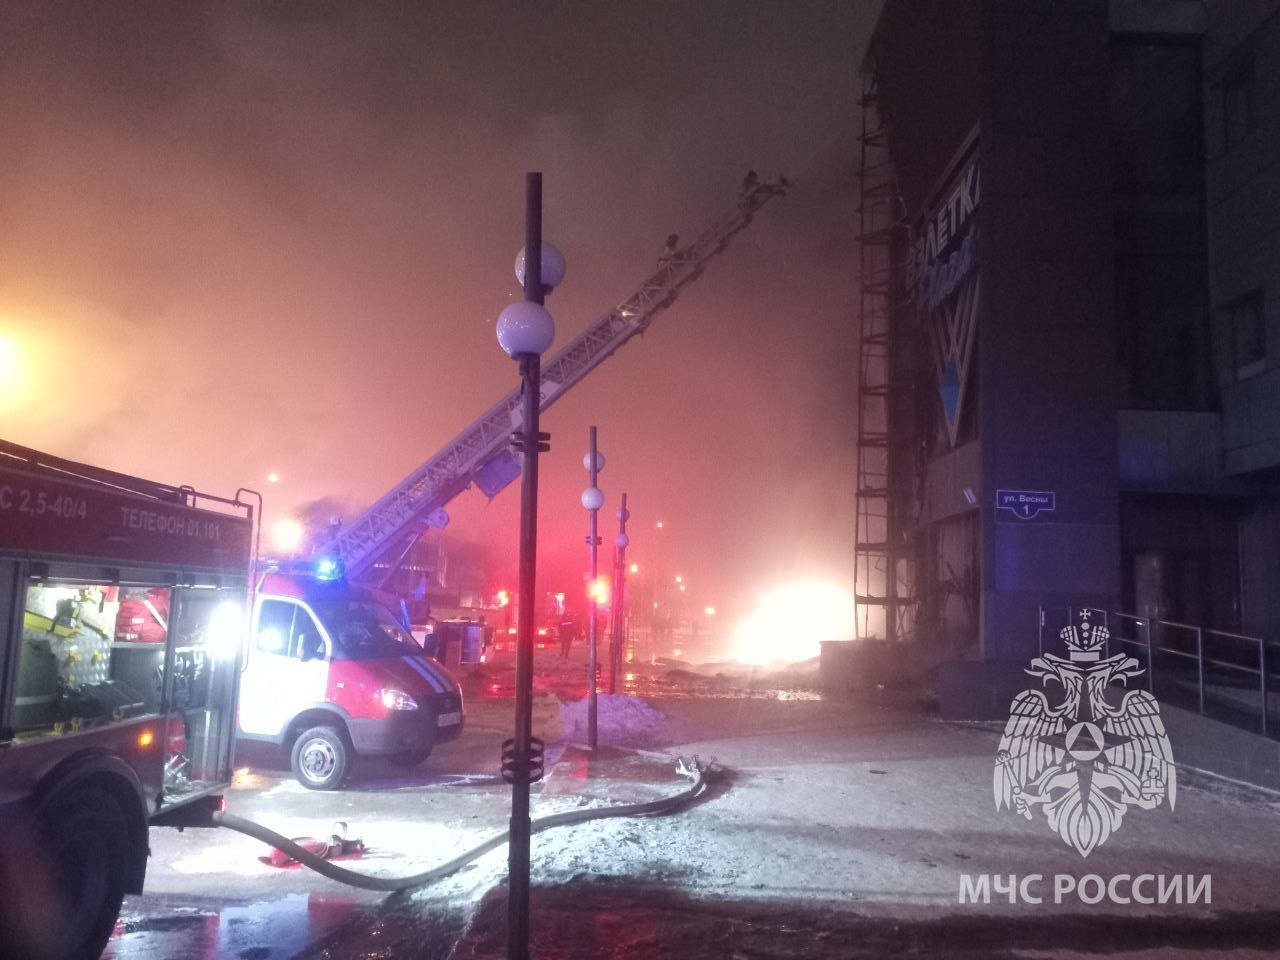 Кровля и фасад ТЦ горят в Красноярске на 200 кв. м, информации о пострадавших не поступало - МЧС